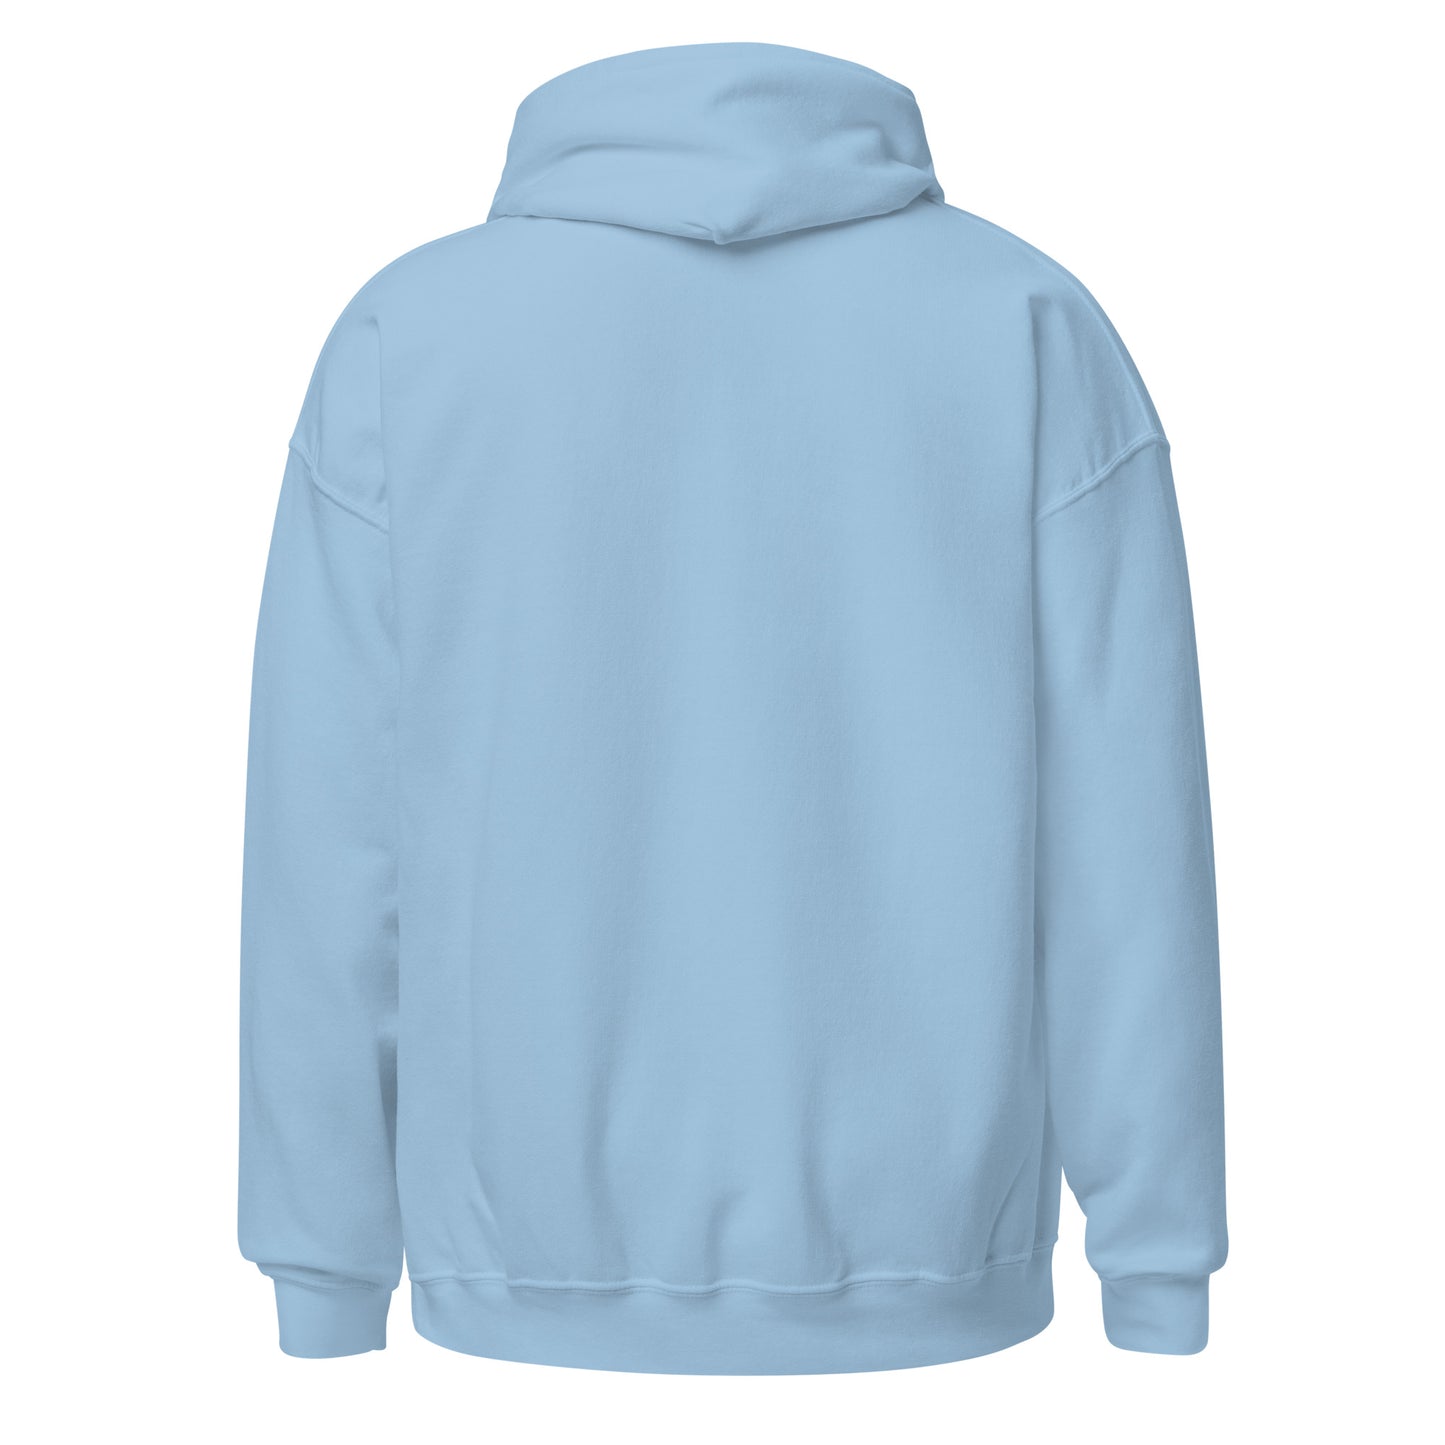 Unisex Hoodie - Blunt B*tch Embroidered 420 Sweatshirt